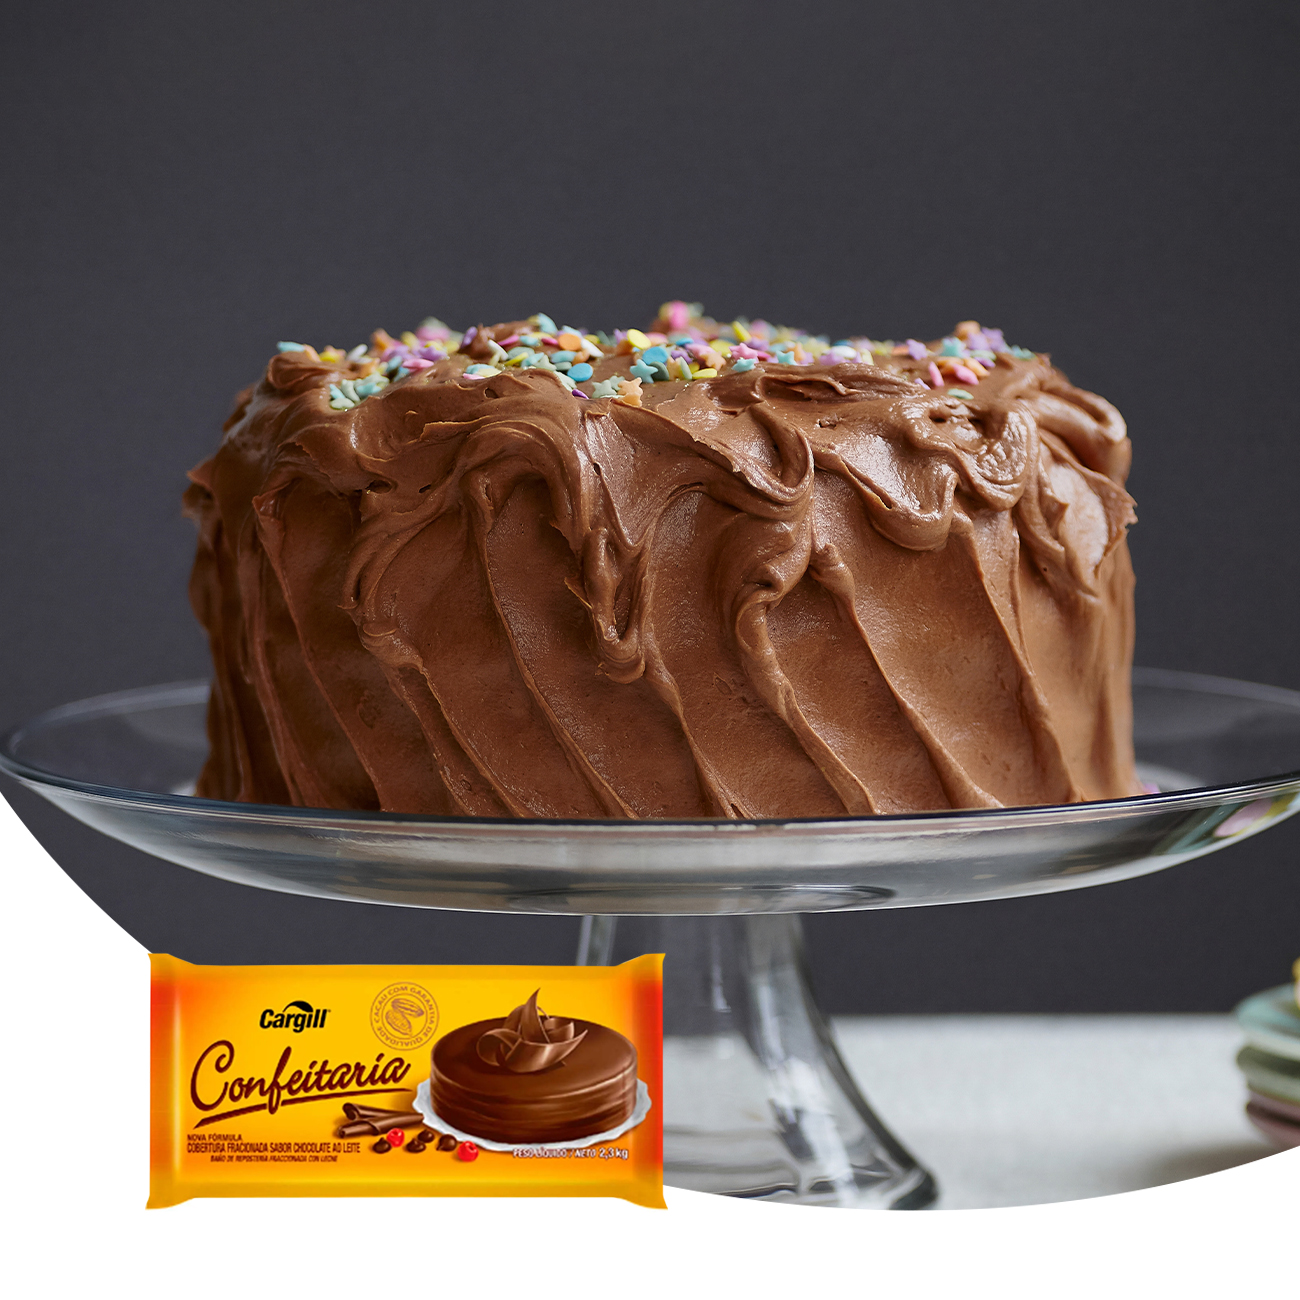 Cobertura de Chocolate em Barra Cargill Confeitaria Fracionada ao Leite 2,3kg